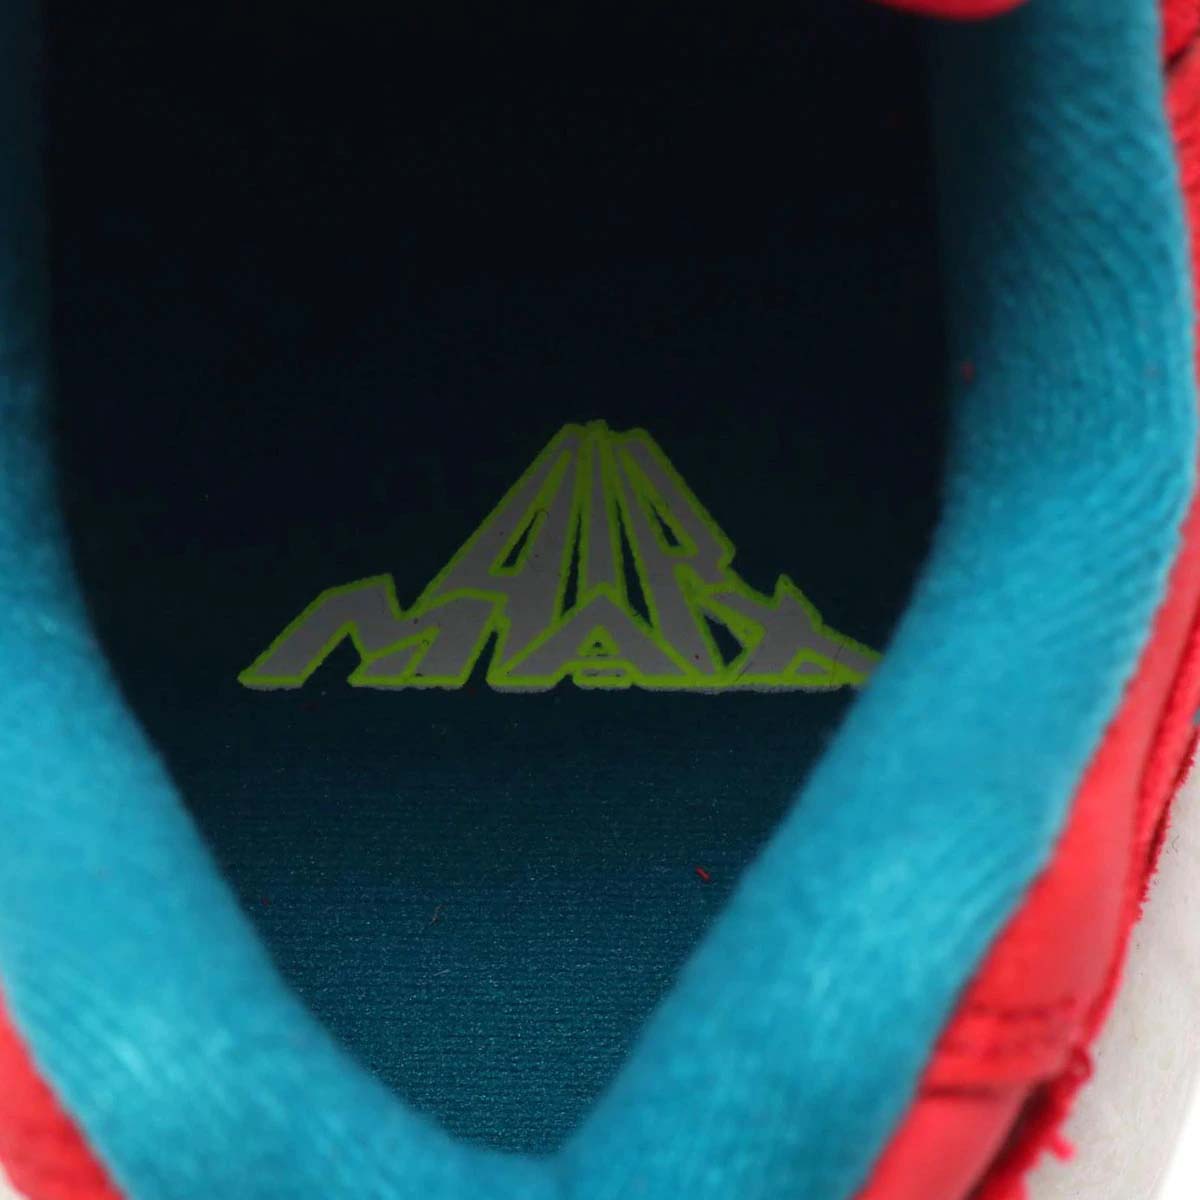 NIKE AIR MAX 95 UTILITY NRG "Mt.Fuji" ナイキ エアマックス95 ユーティリティ NRG 富士山 CT3689-600 UNIVERSITY RED / BRIGHT SPRUCE レッド/ブルー